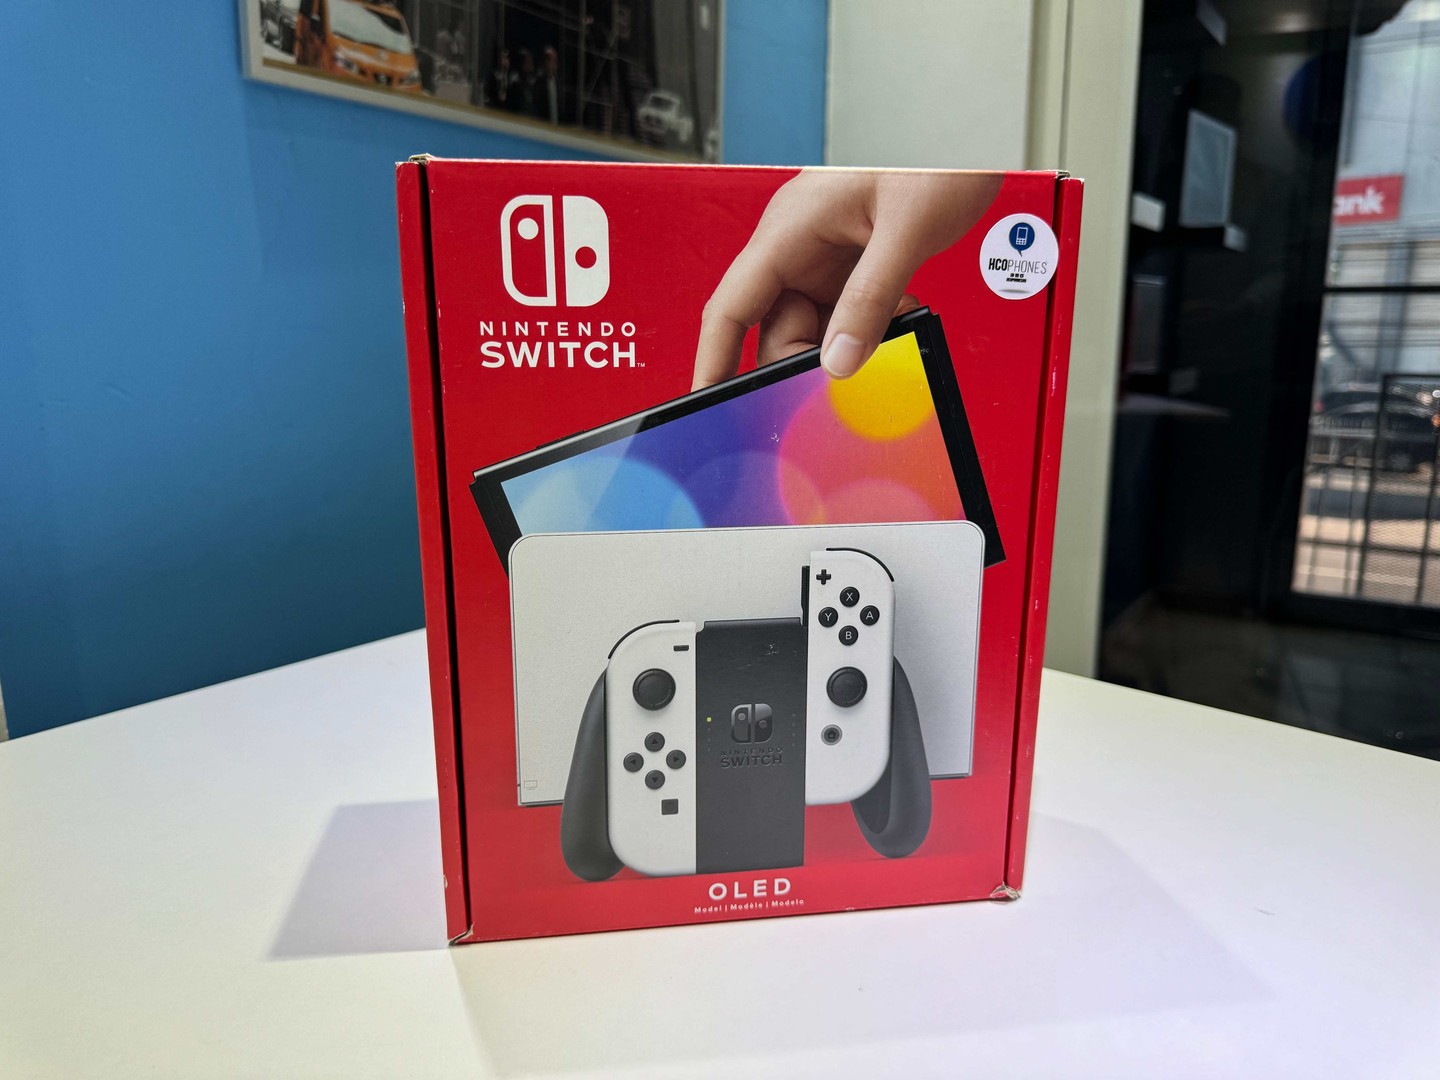 consolas y videojuegos - Nintendo Switch Oled Nuevos Sellados, Originales RD$ 18,995 NEG/ TIENDA 0